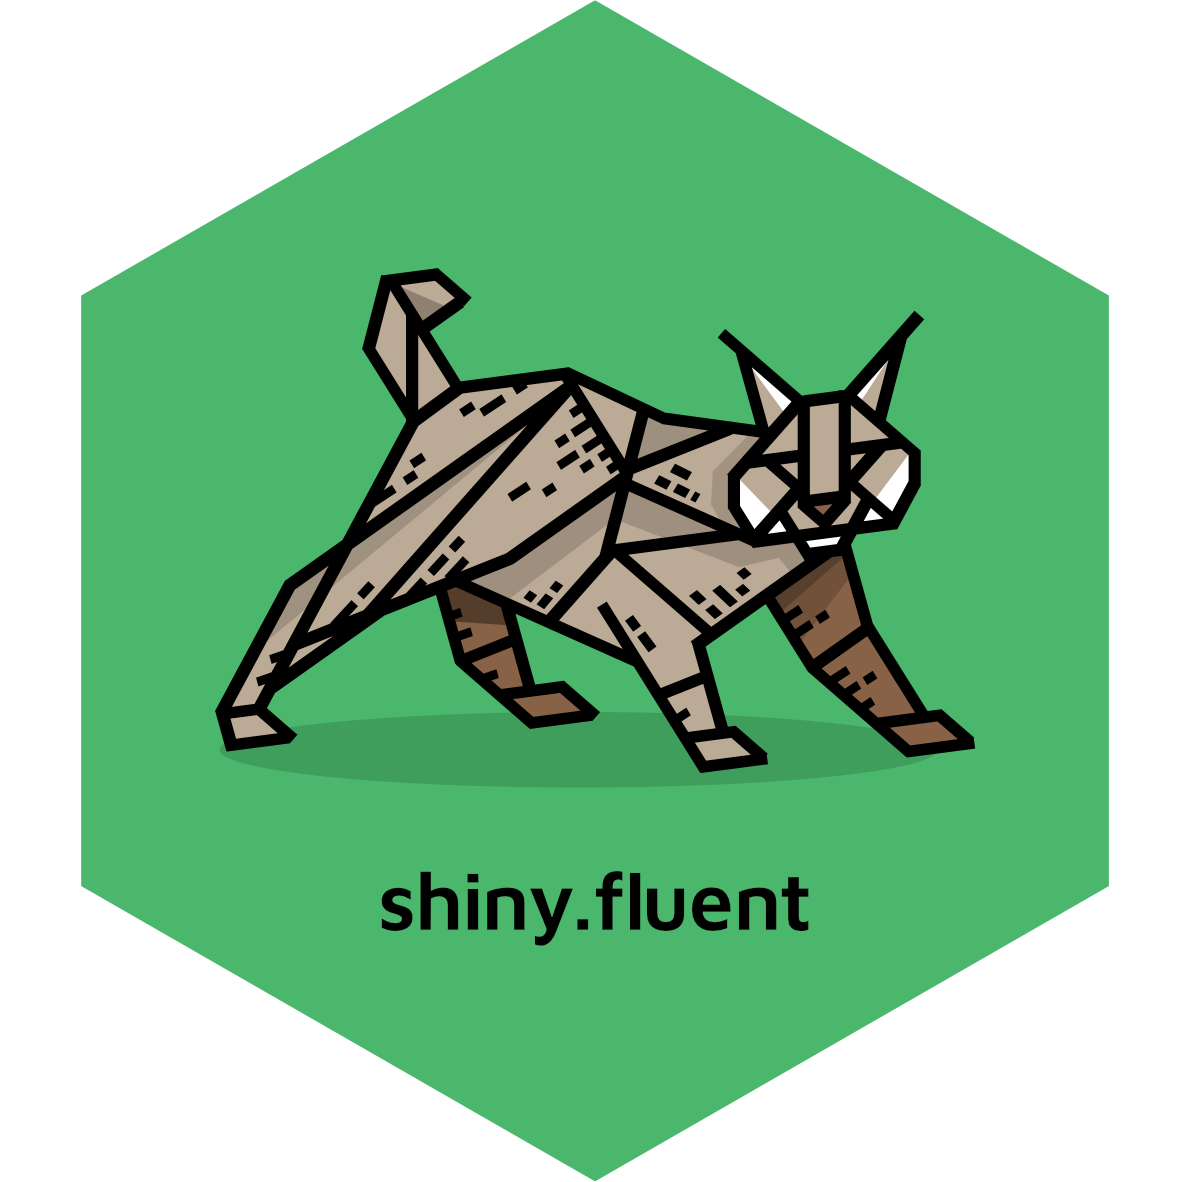 shiny.fluent logo